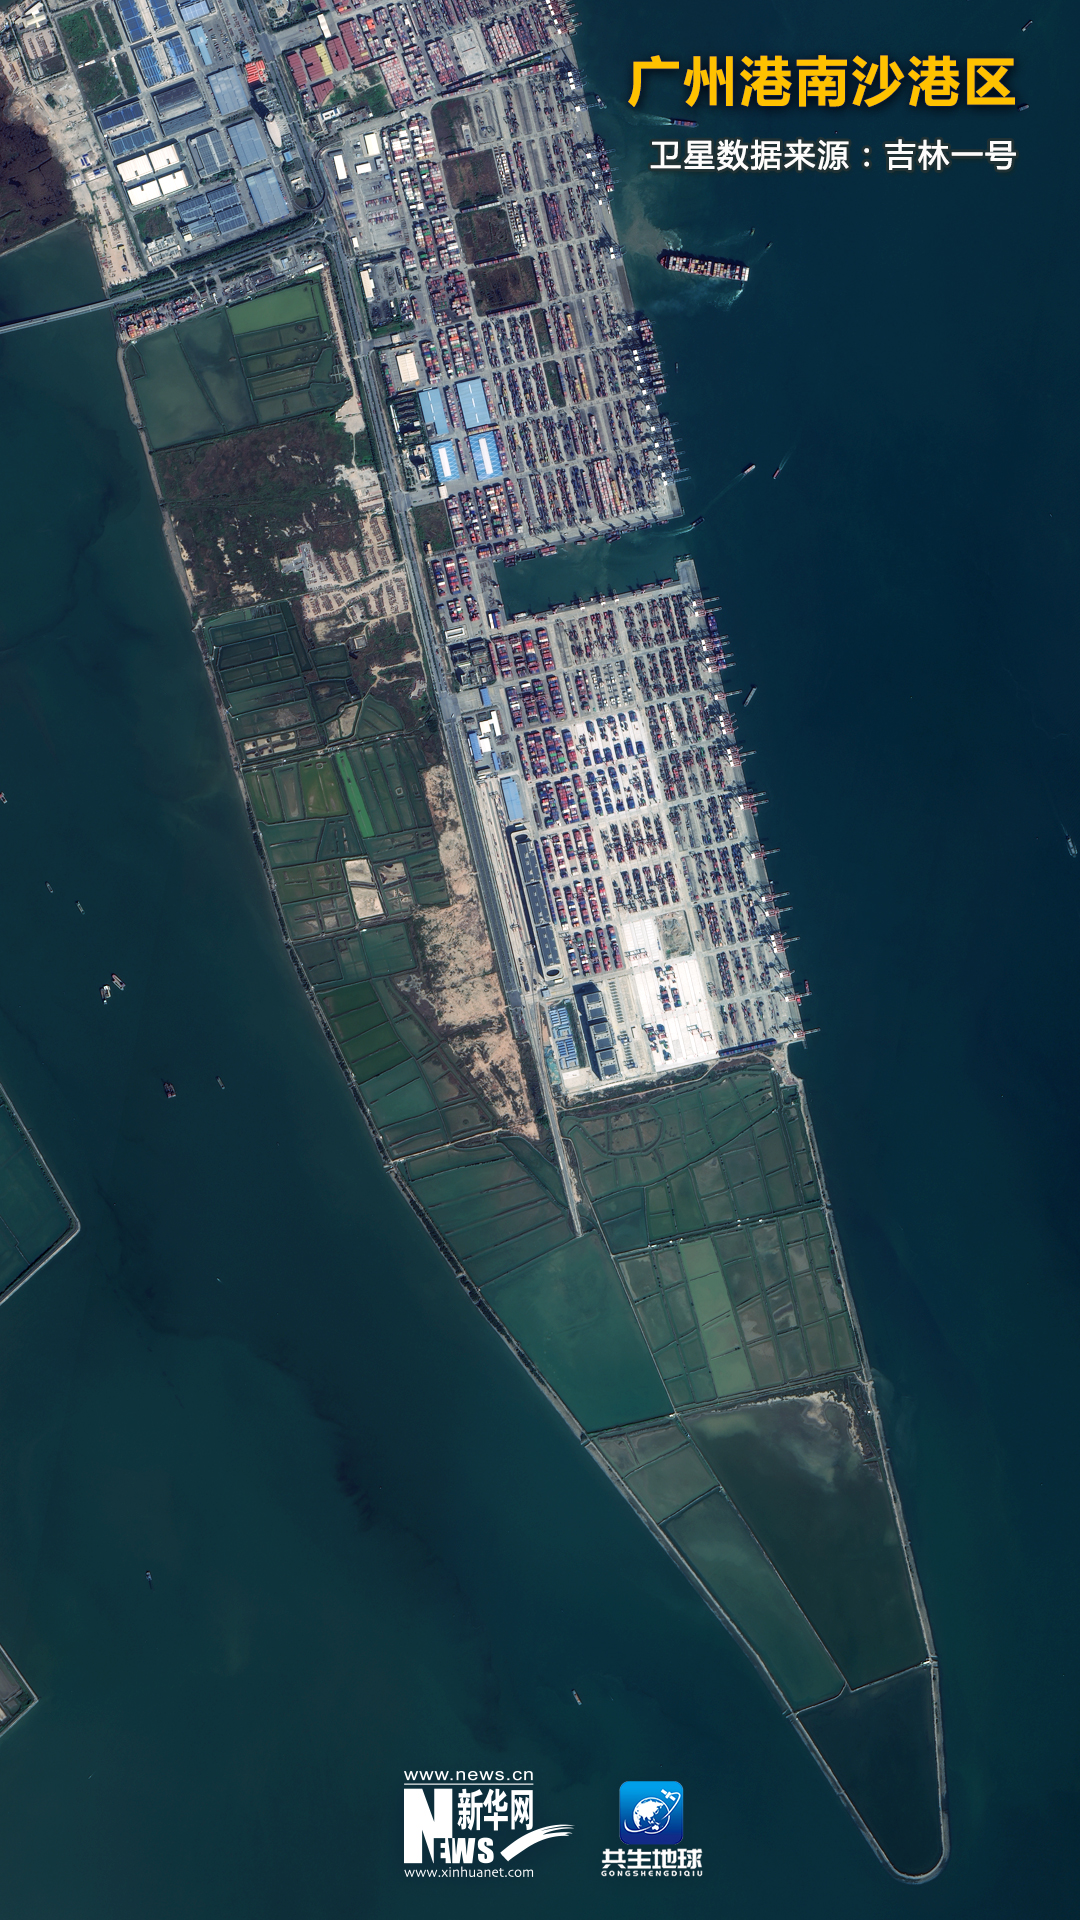 衛星“瞰”奮進中國裏的忙碌港口